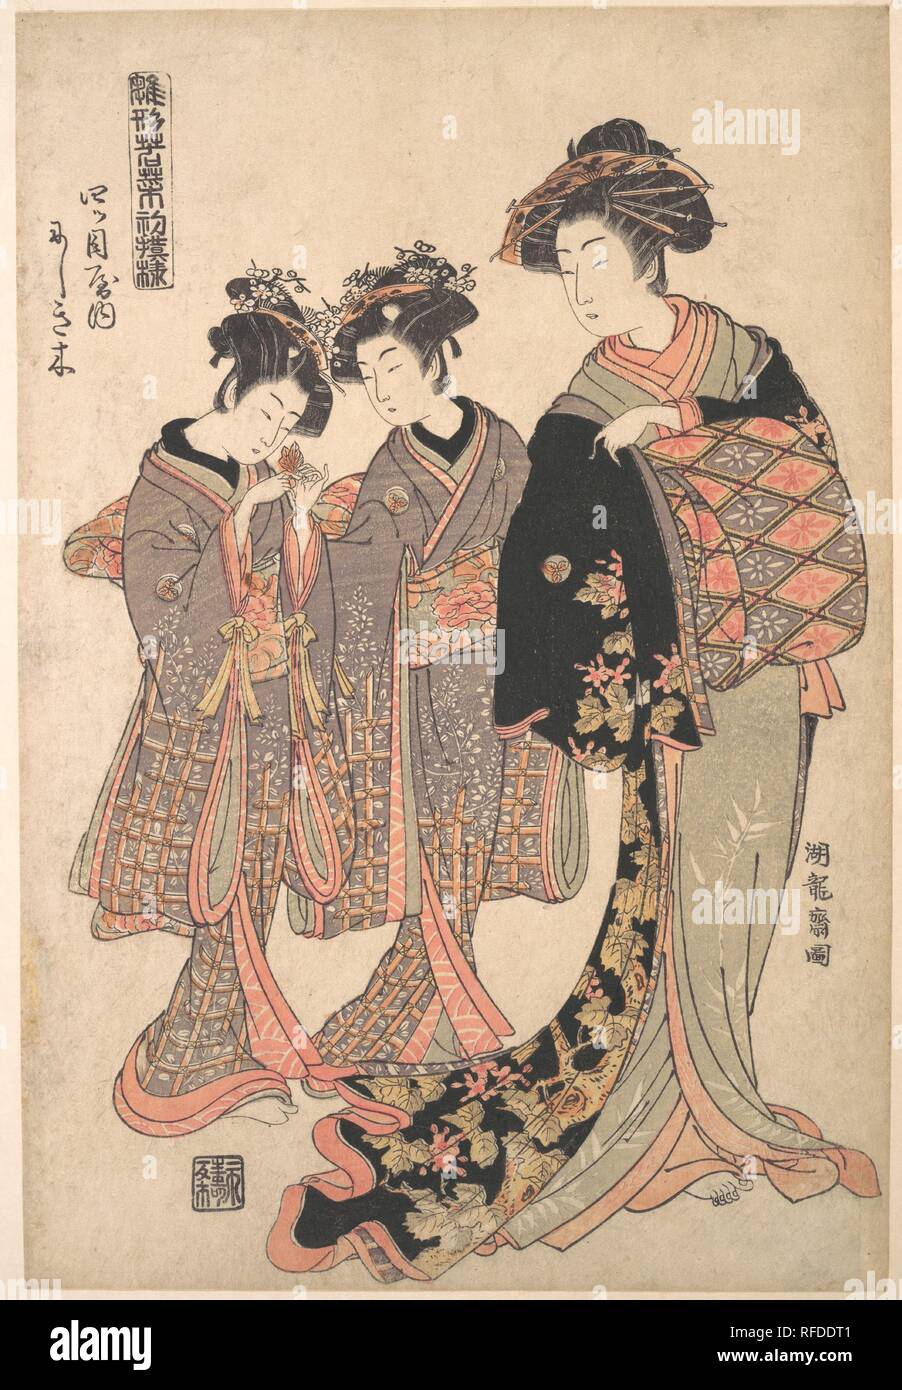 La courtisane de l'Yotsumeya Nishikigi maison close, à partir de la série "Un modèle du livre de l'année premières créations, frais comme des herbes de printemps' ('Hinagata wakana hatsu moyo'). Artiste : Isoda Koryusai (japonais, 1735-ca. 1790). Culture : le Japon. Dimensions : 14 7/8 x 10 1/8 in. (37,8 x 25,7 cm). Date : 1776. Koryusai, qui venait d'une famille samouraï appauvries, a renoncé à son rang de s'installer en tant qu'artiste à Edo. Ses premiers travaux reflètent le style romantique et mélancolique de Harunobu figures idéalisées. Plus tard dans sa carrière, il a fait une série d'audacieux imprime illustrant les modes du printemps somptueux demimonde. Nishikigi Banque D'Images